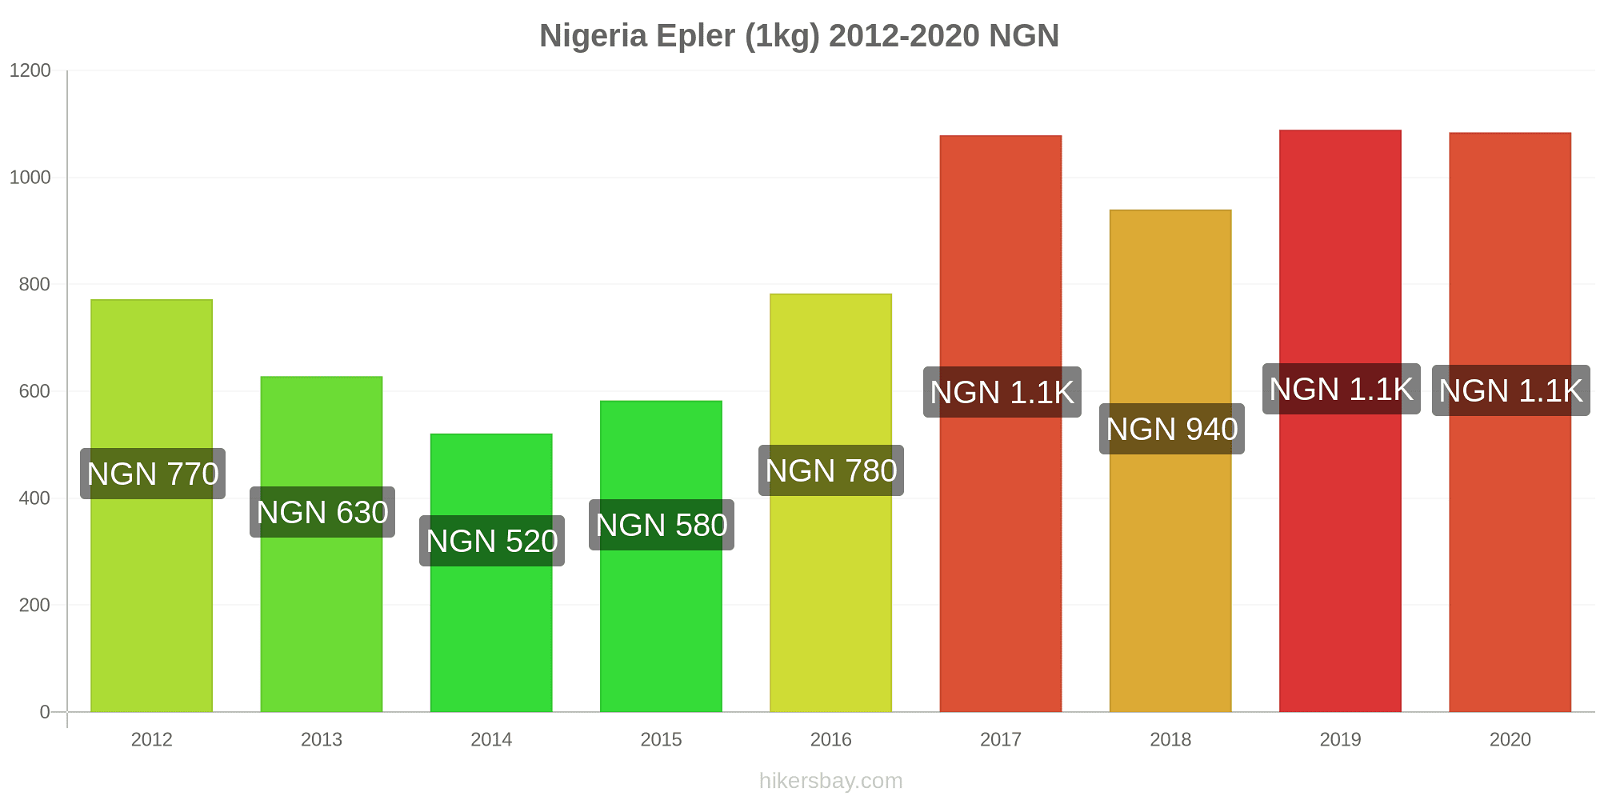 Nigeria prisendringer Epler (1kg) hikersbay.com